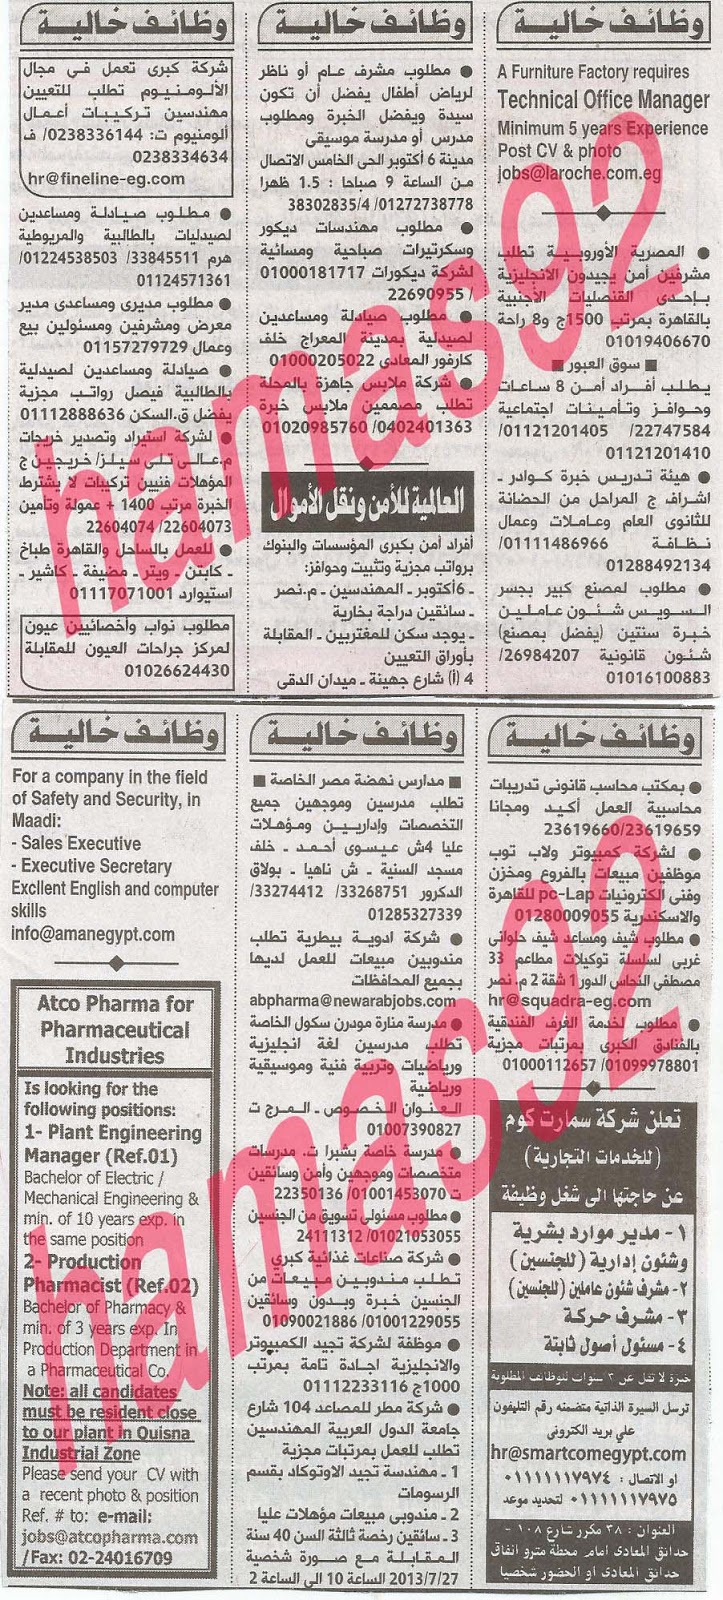 وظائف خالية فى جريدة الاهرام الجمعة 26-07-2013 3